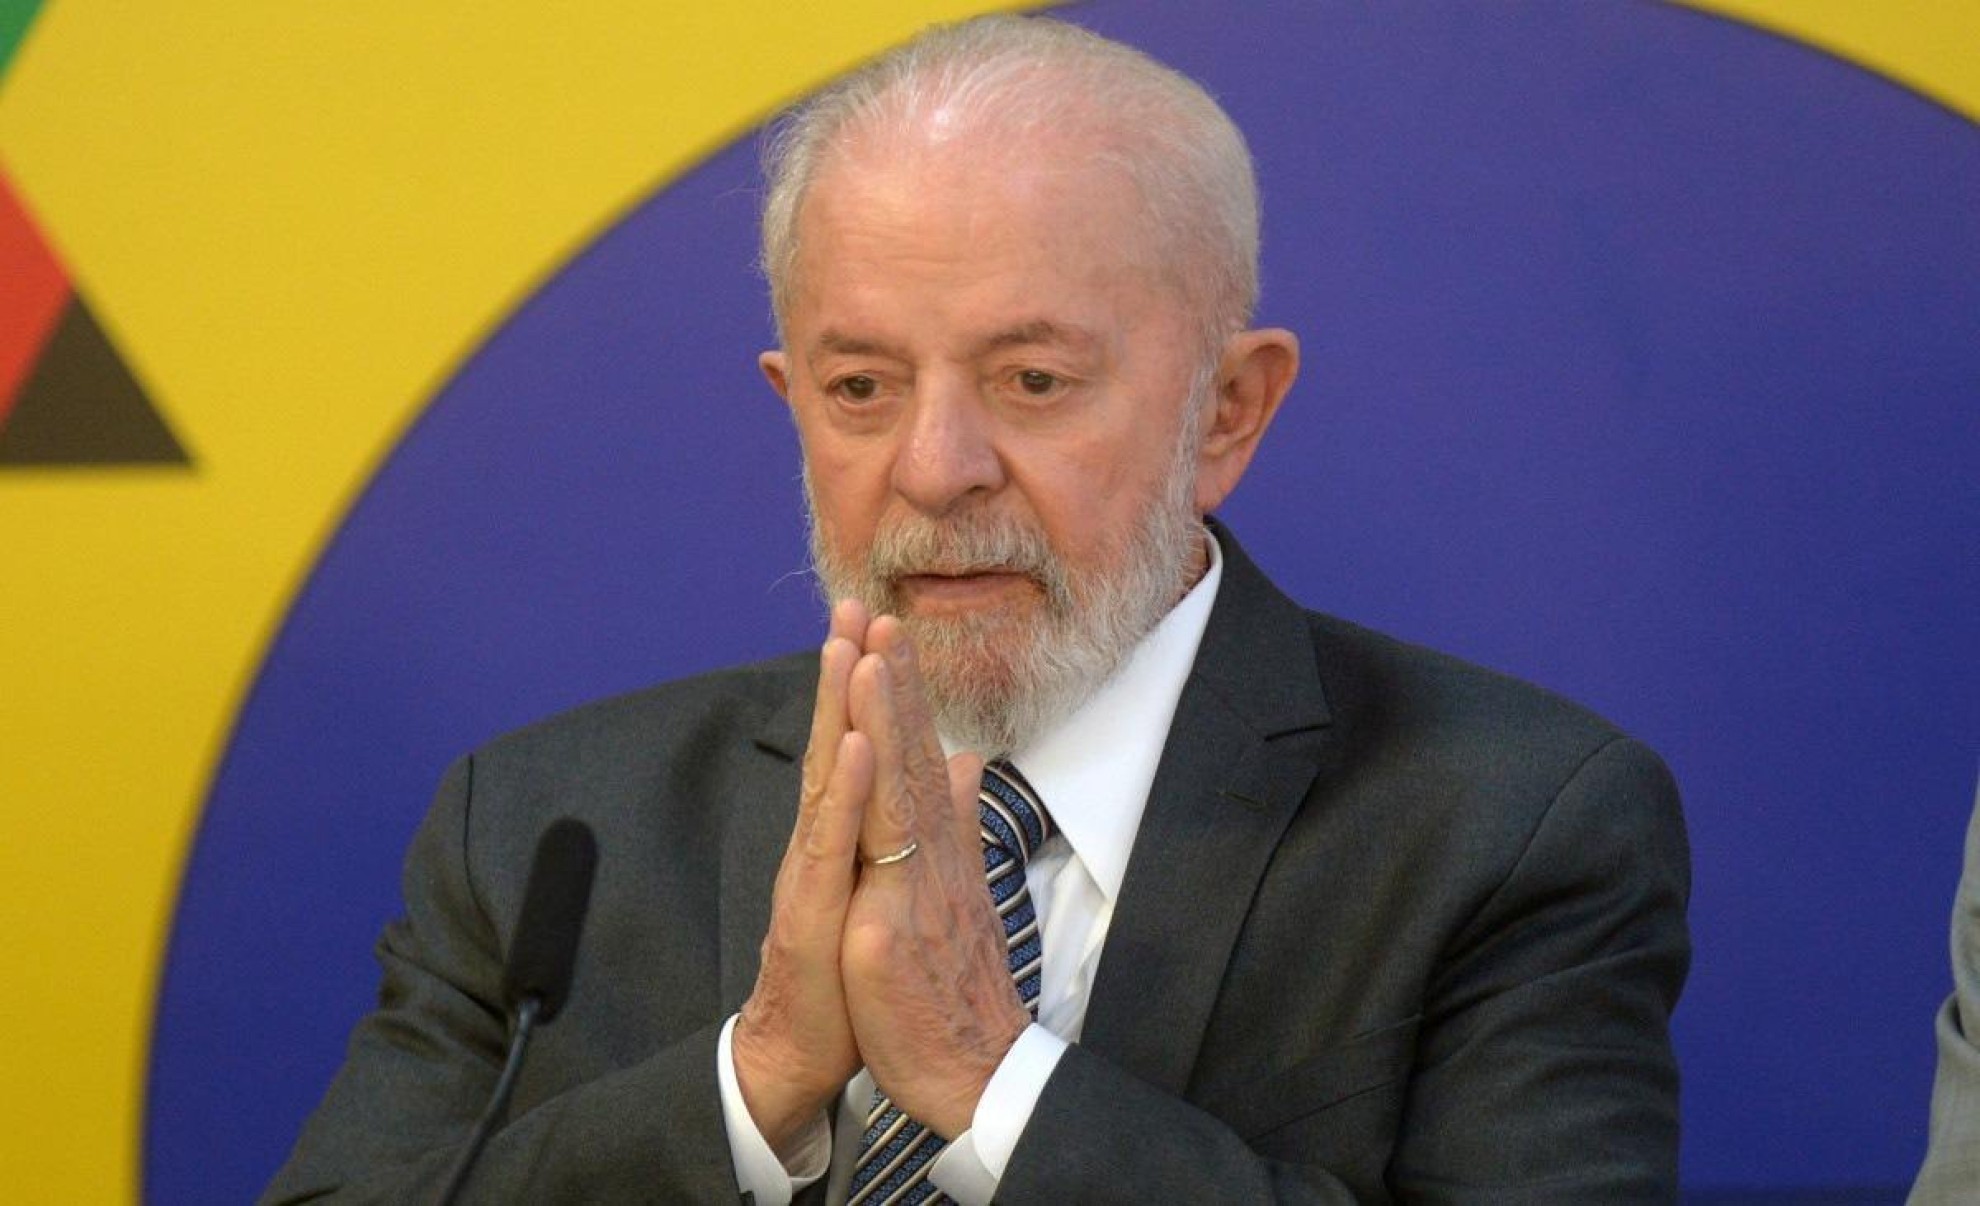  ‘Se uniram contra o extremismo', diz Lula ao celebrar eleições da França